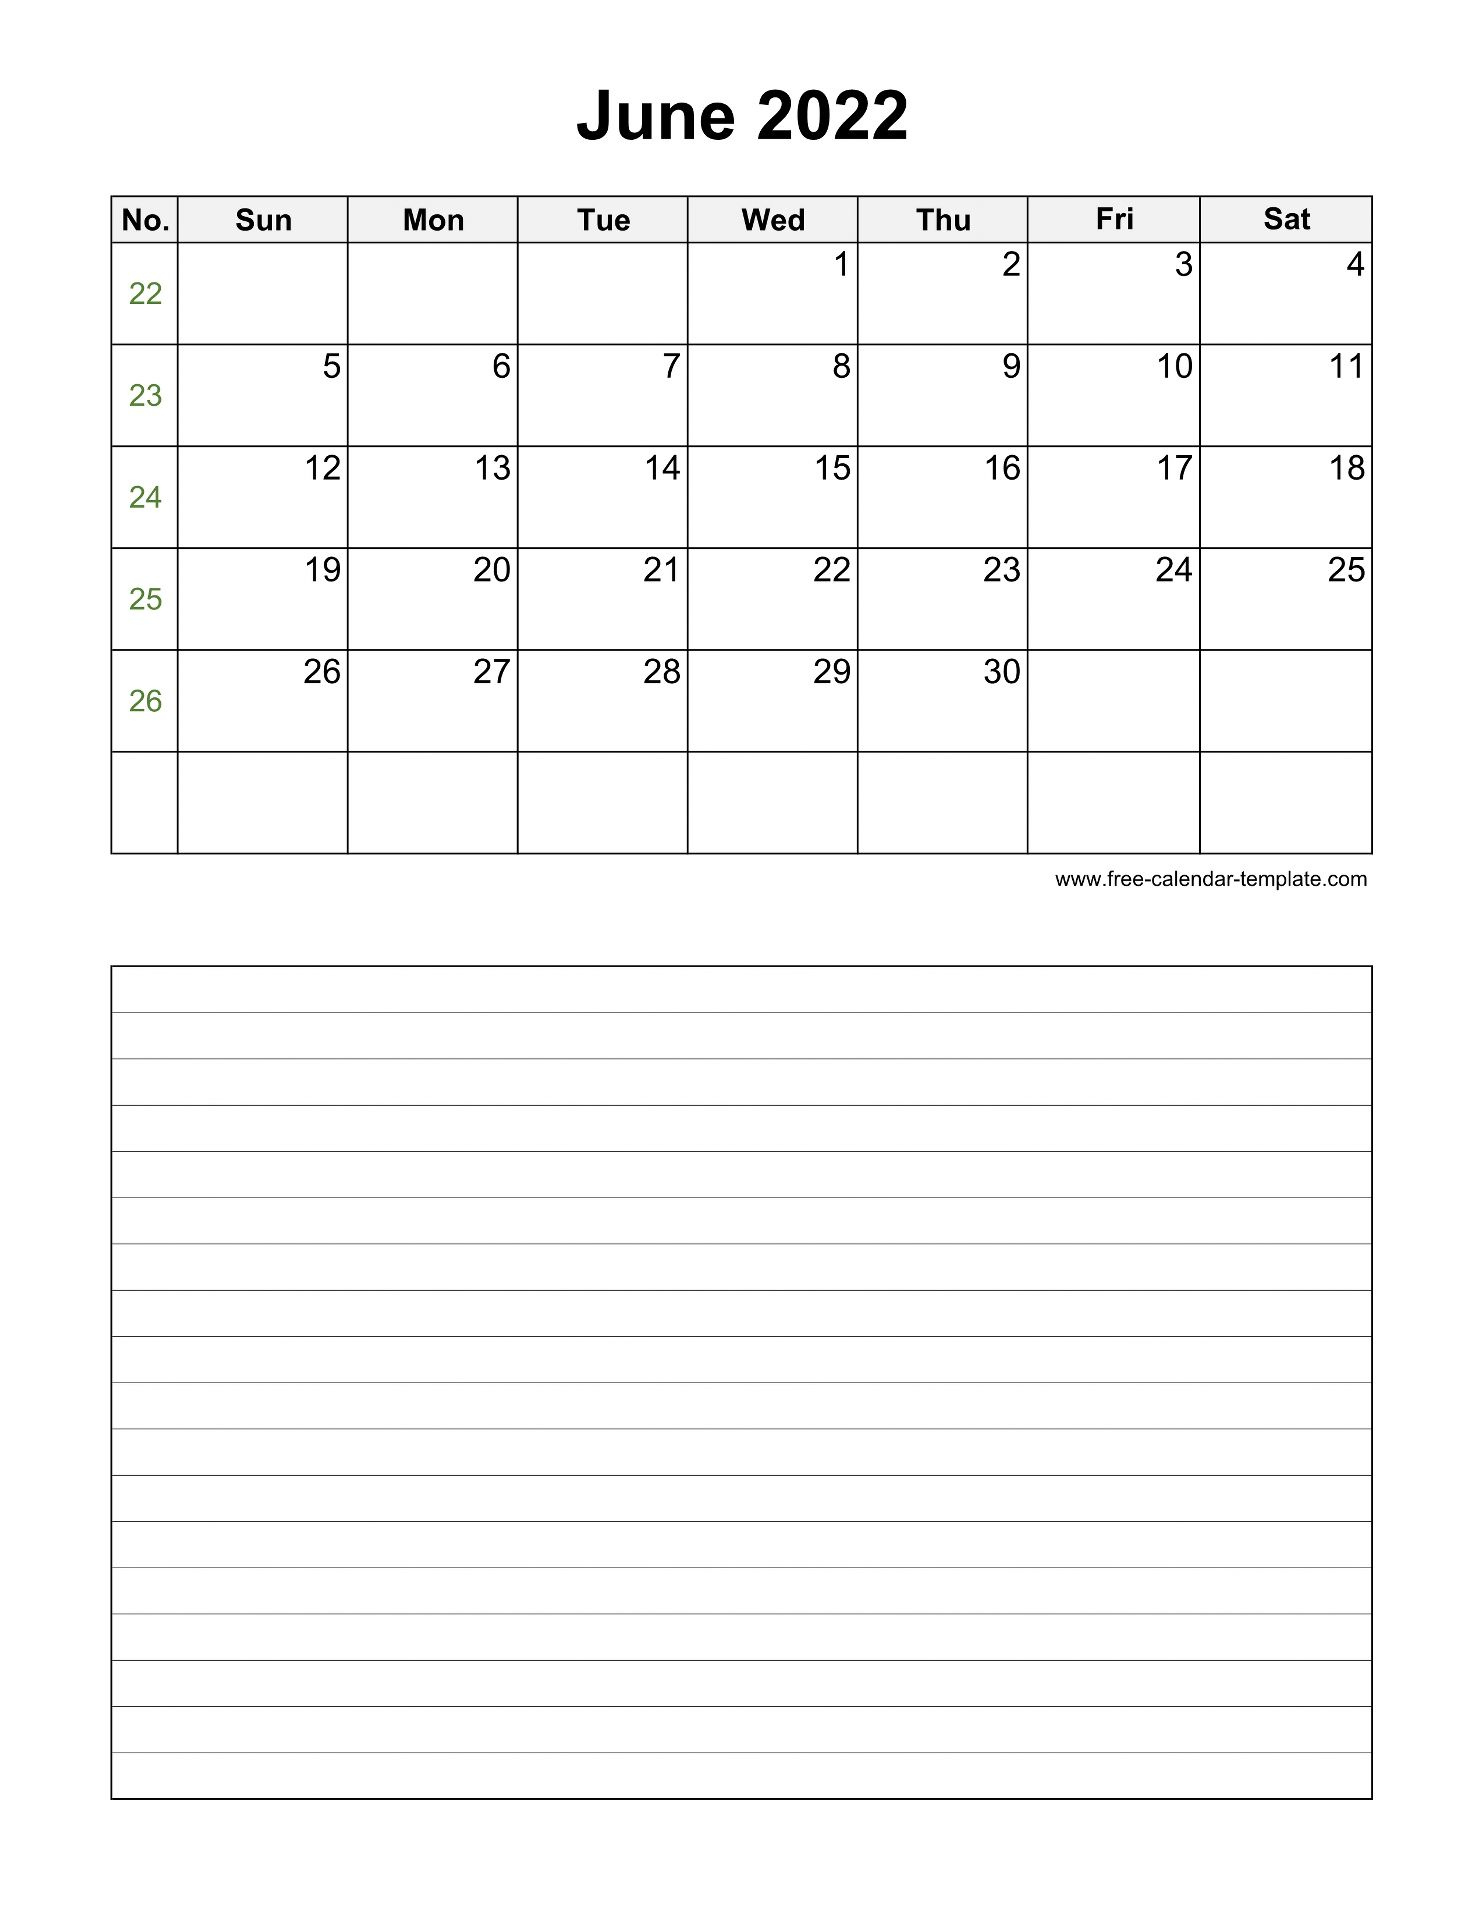 June 2022 Free Calendar Tempplate Free calendar template